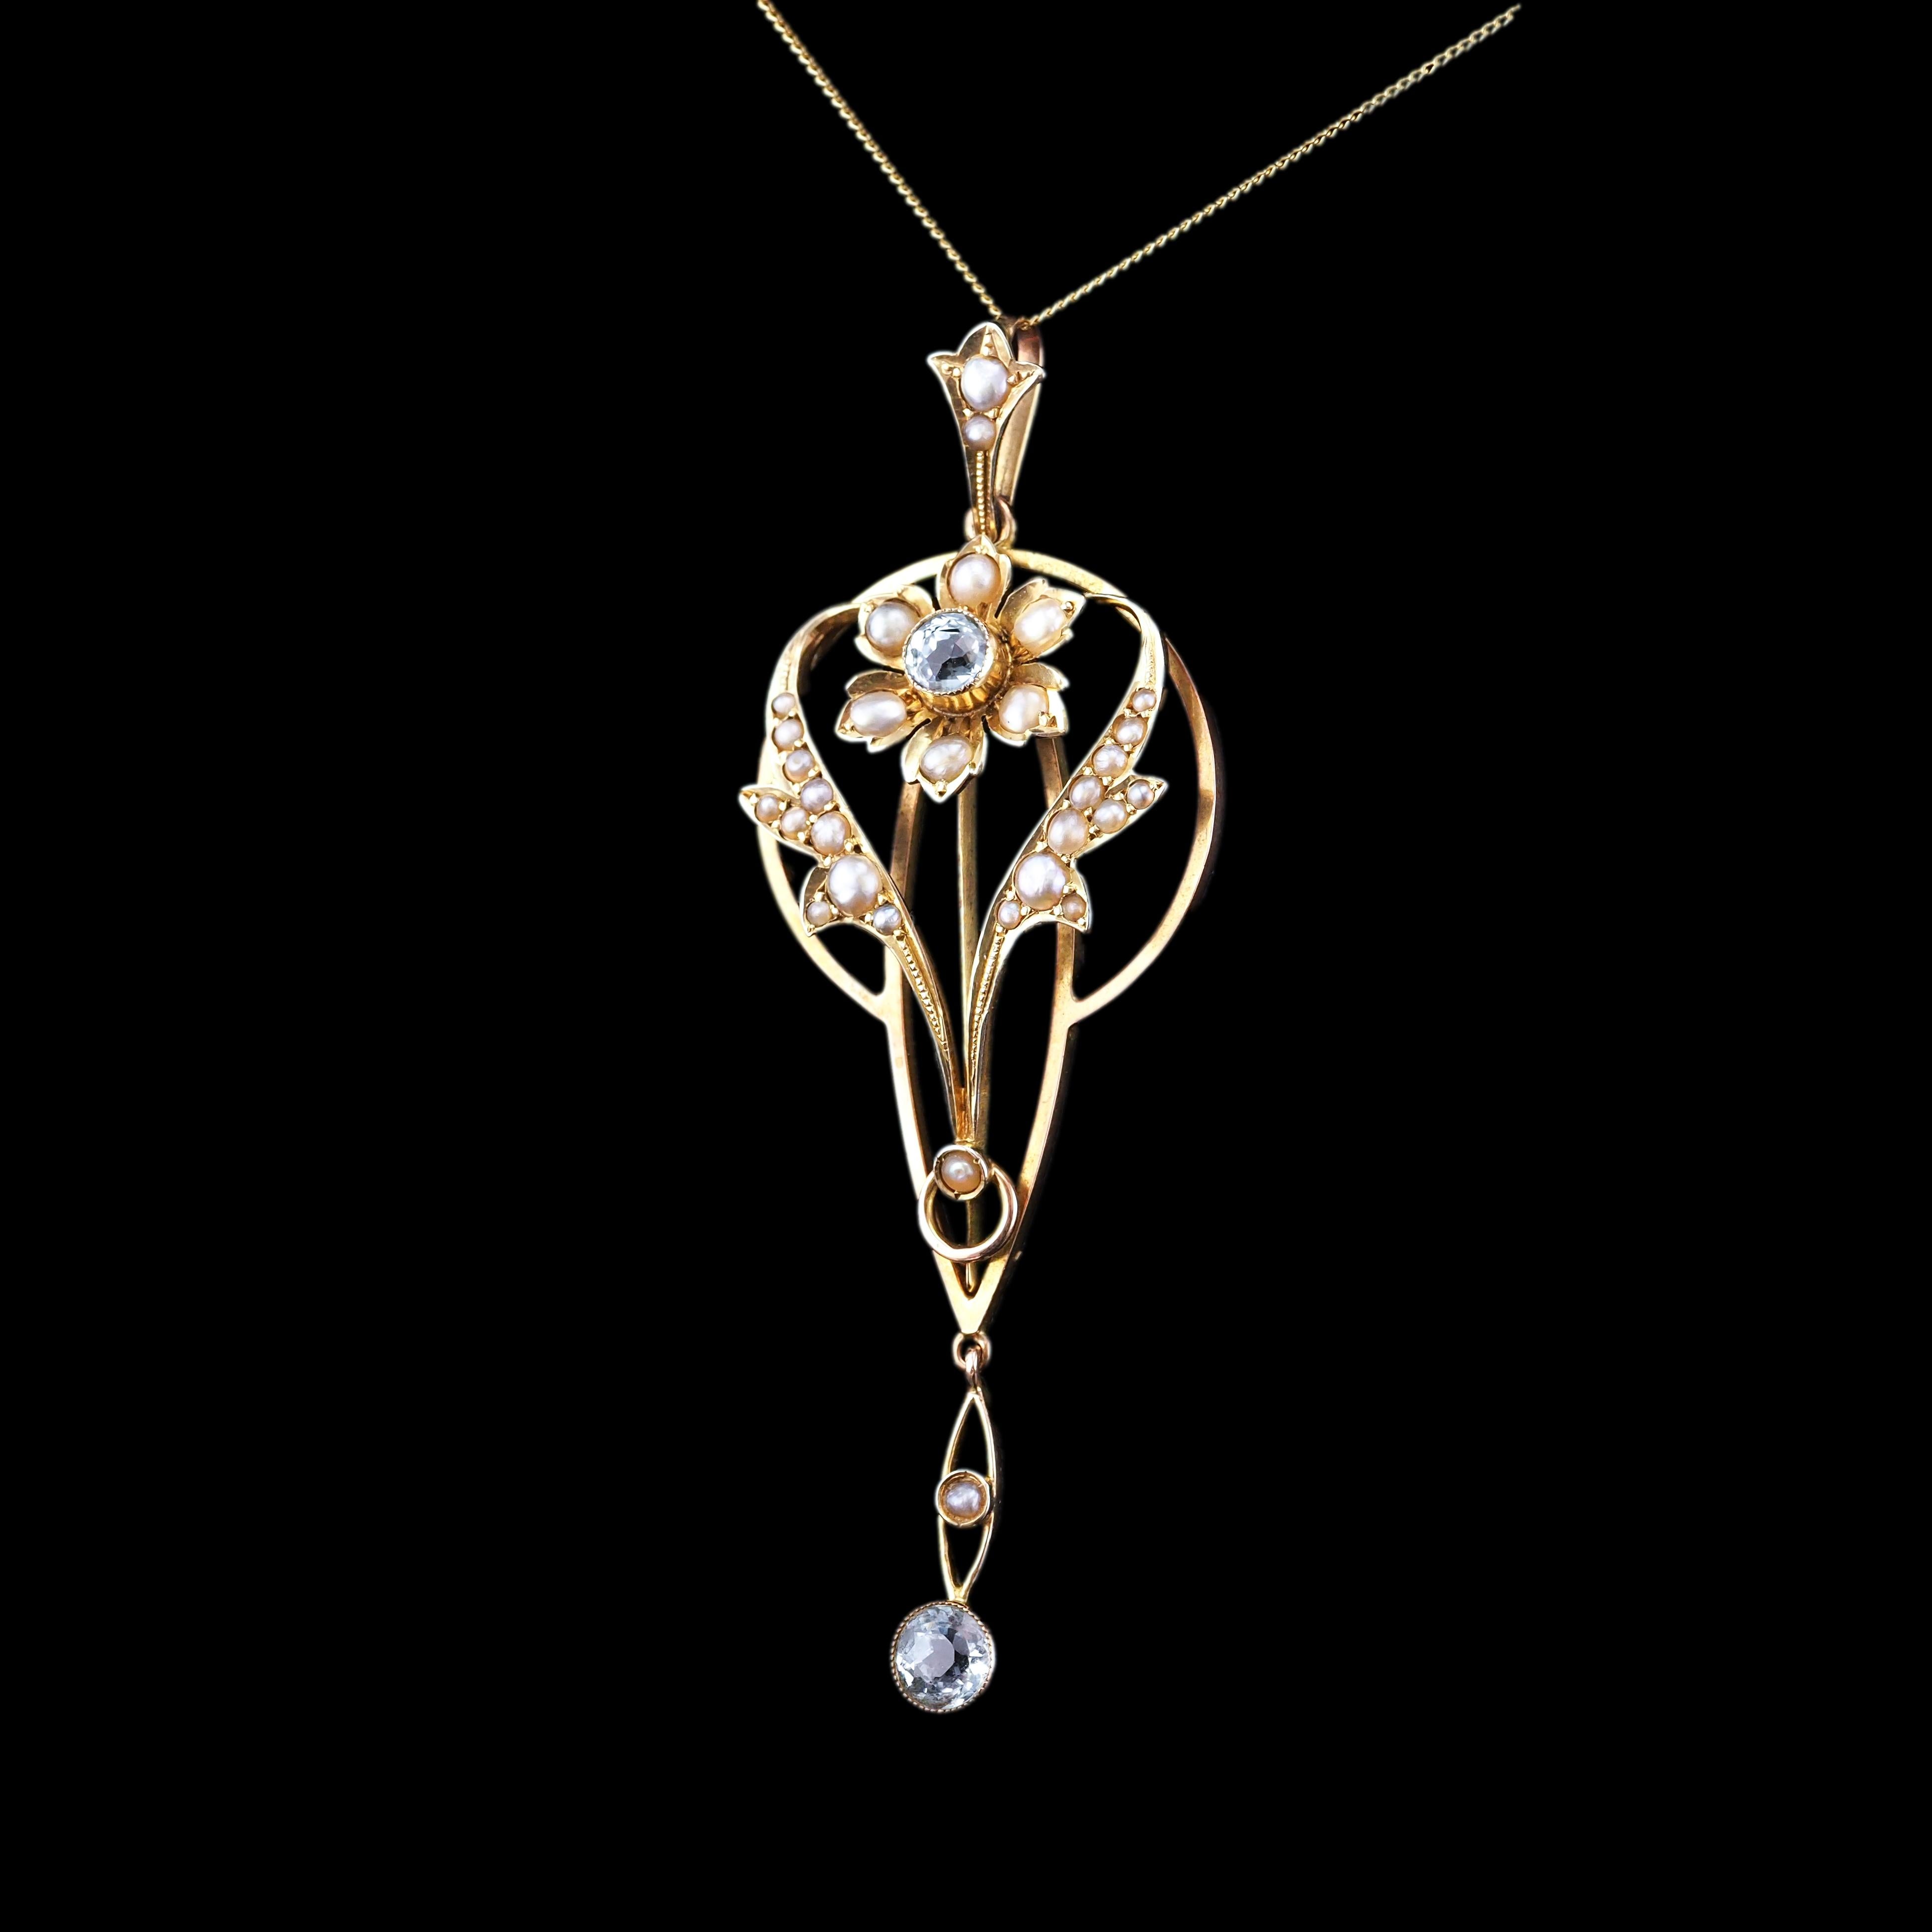 Women's or Men's Antique Aquamarine Pendant Necklace Seed Pearls 9K Gold Art Nouveau c.1905